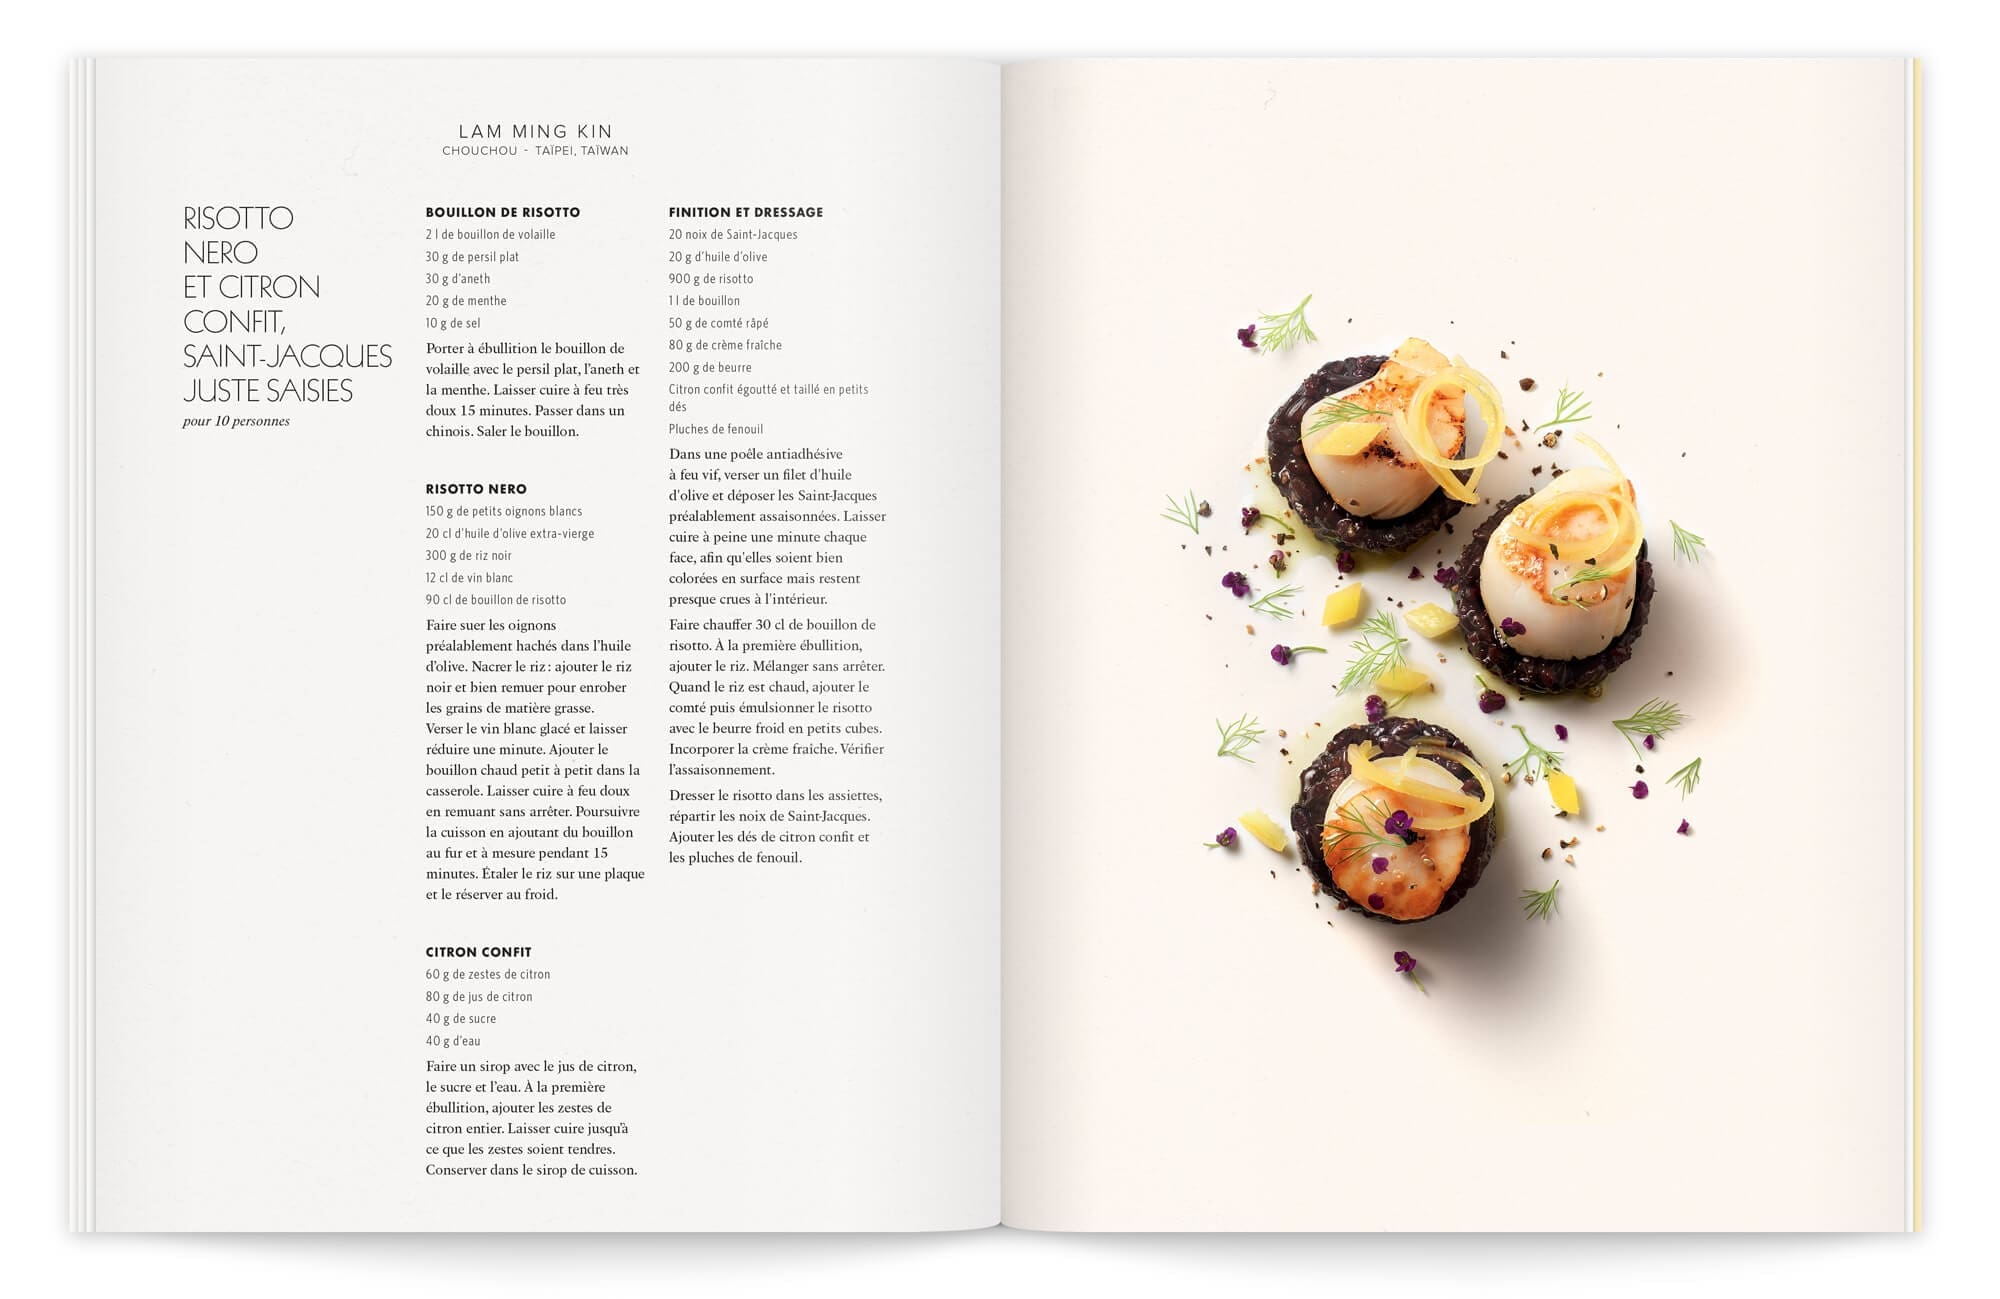 photographie culinaire par peter lippmann et stylisme de garlone bardel sous la direction artistique de IchetKar